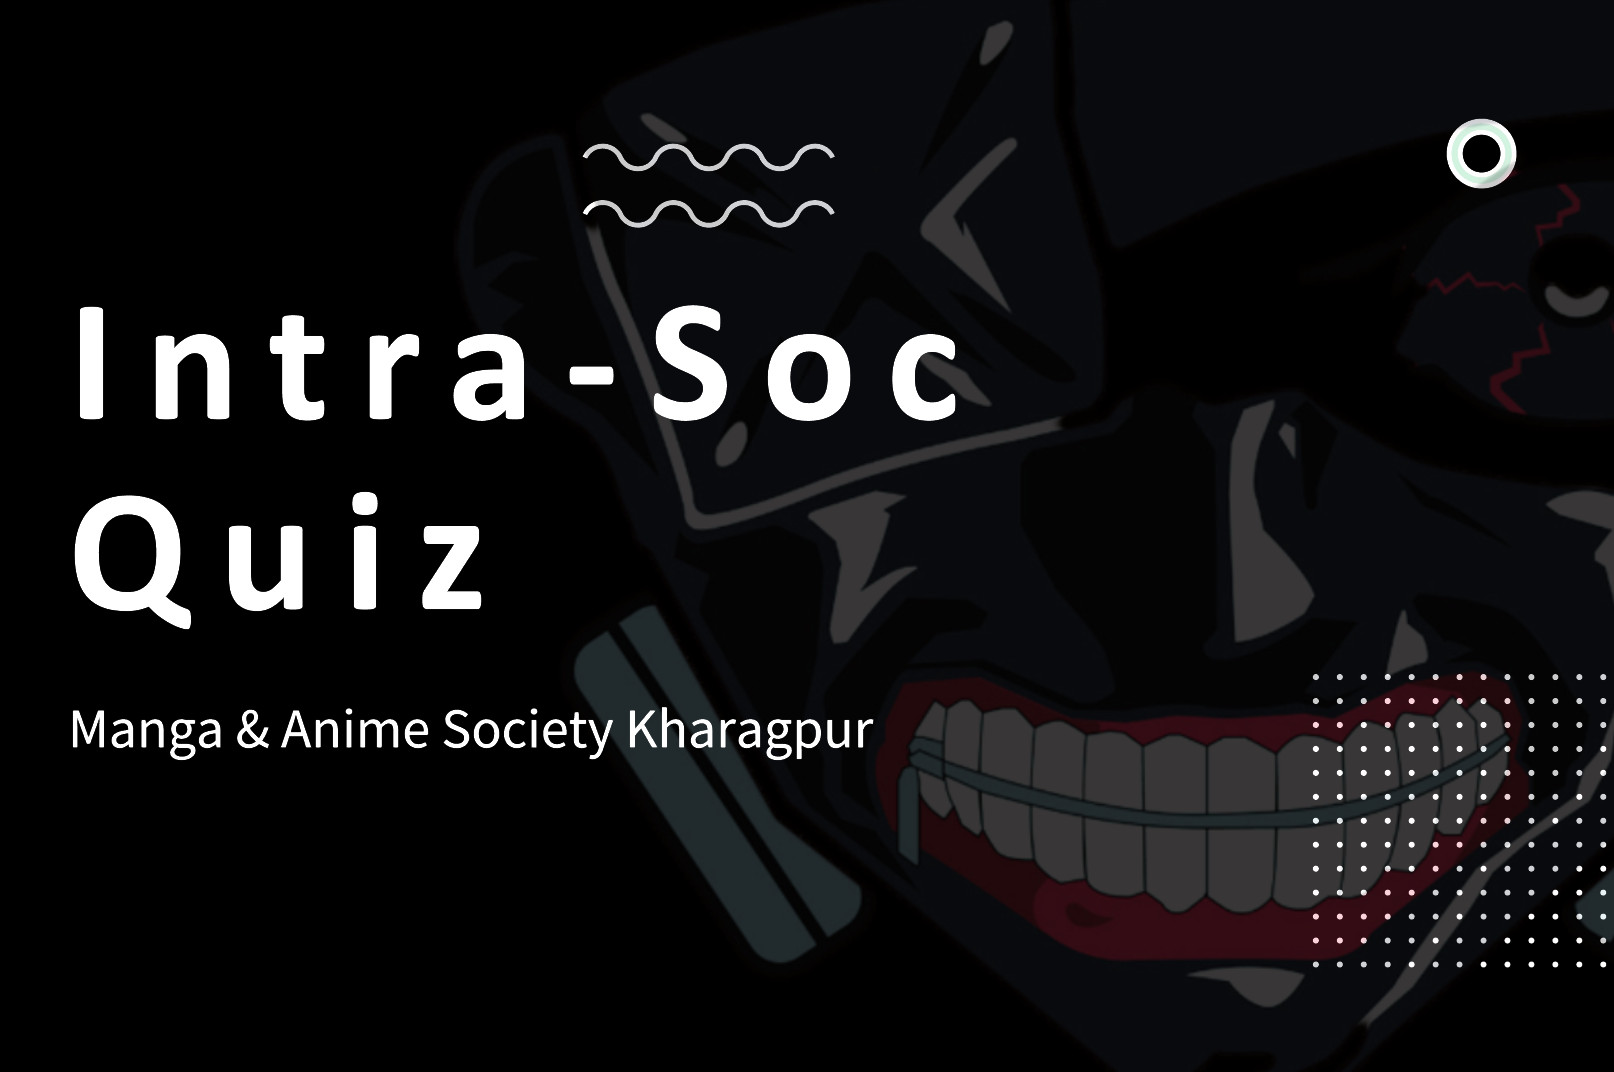 Intra-Soc Anime Quiz Extravaganza